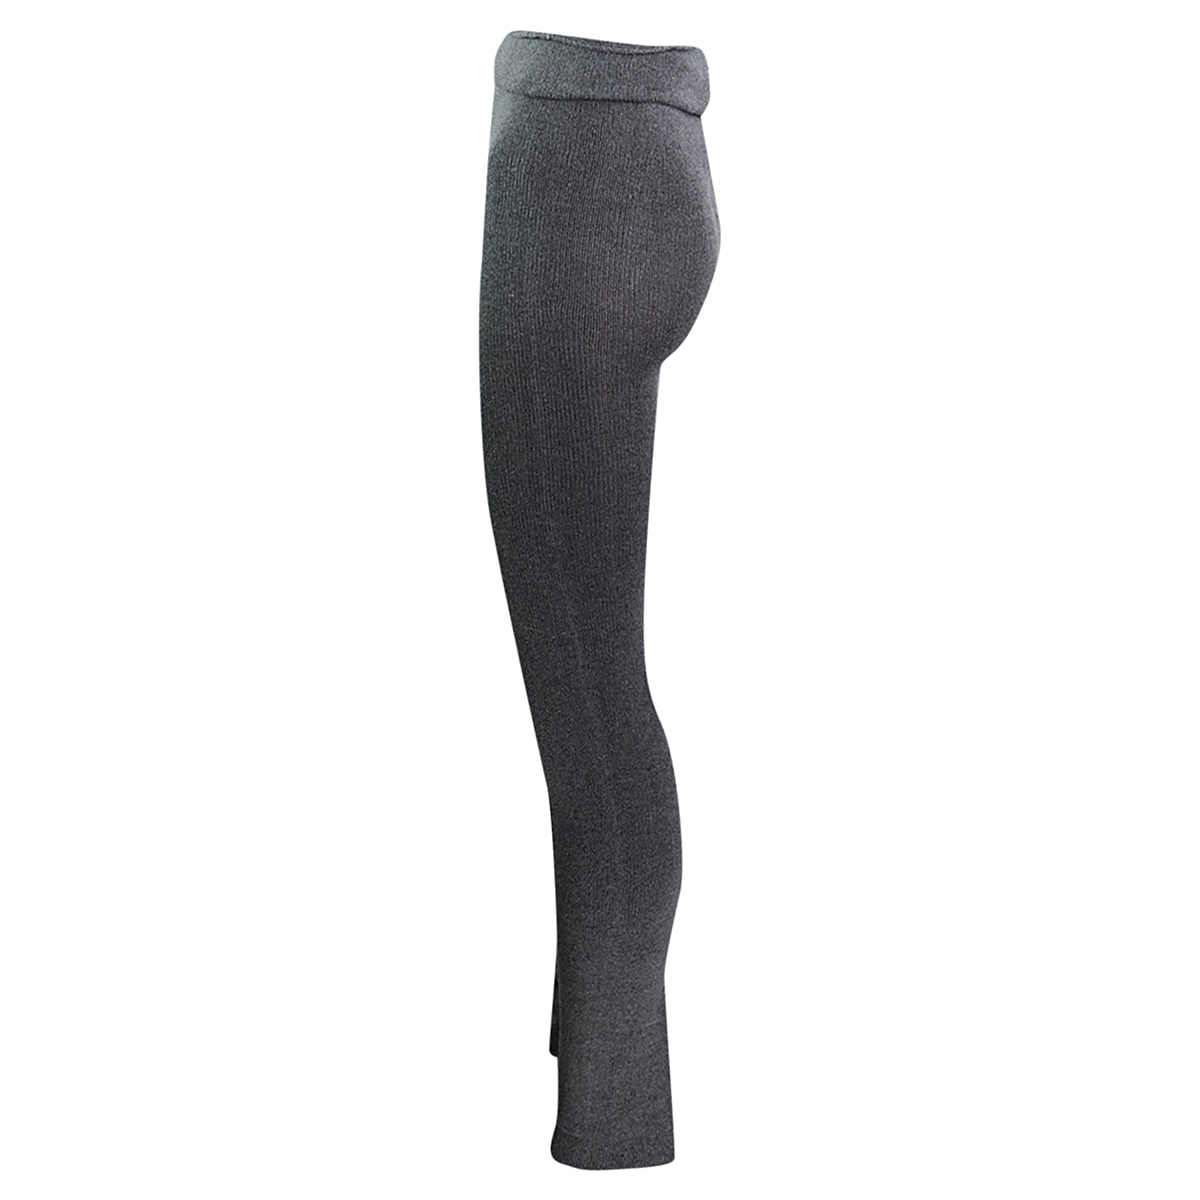 Intermezzo - Ladies Warm-up pants/Practice pants long 5034 Pansur